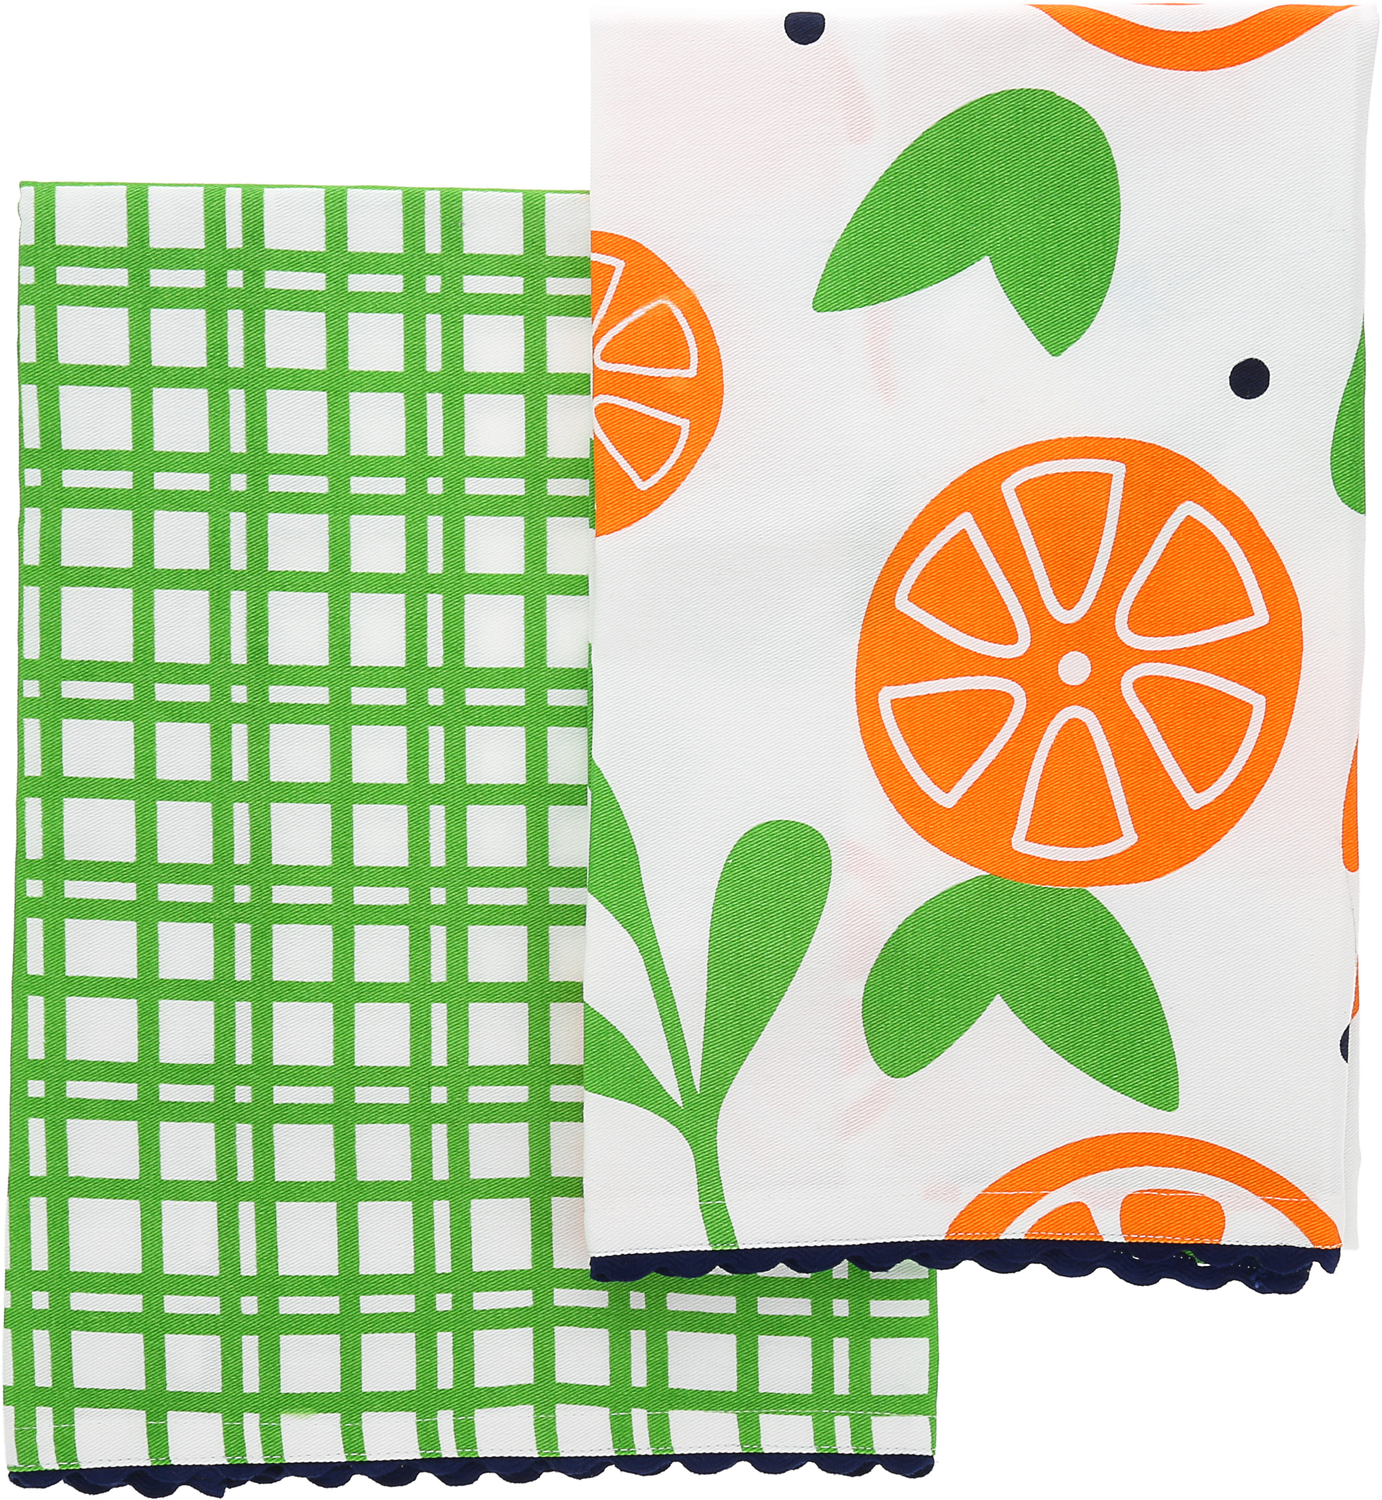 Oranges by Fruitful Livin' - Oranges - Tea Towel Gift Set (2 - 20" x 28")